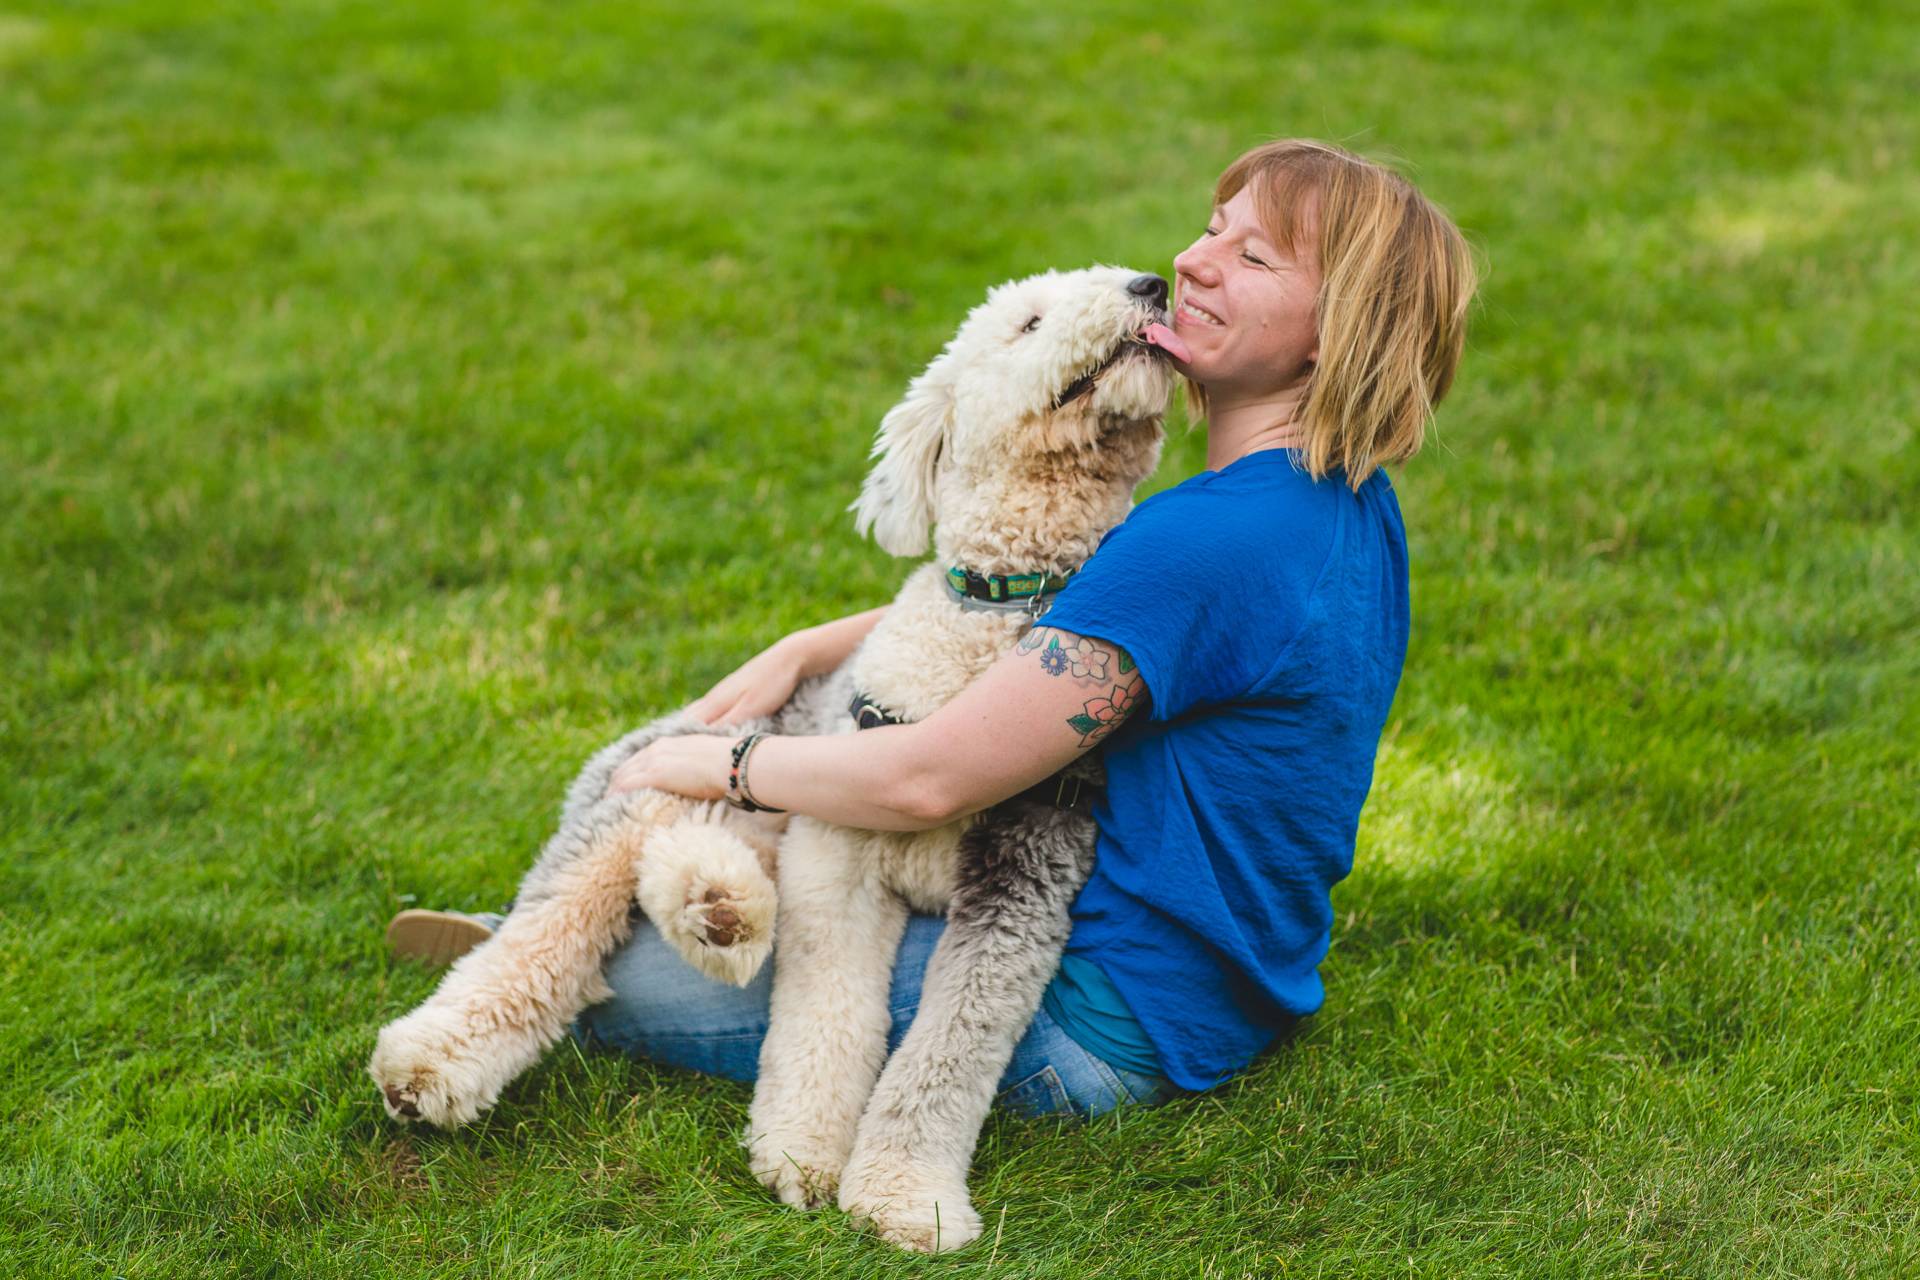 Bridgett vonHoldt sitting with her dog on her lap